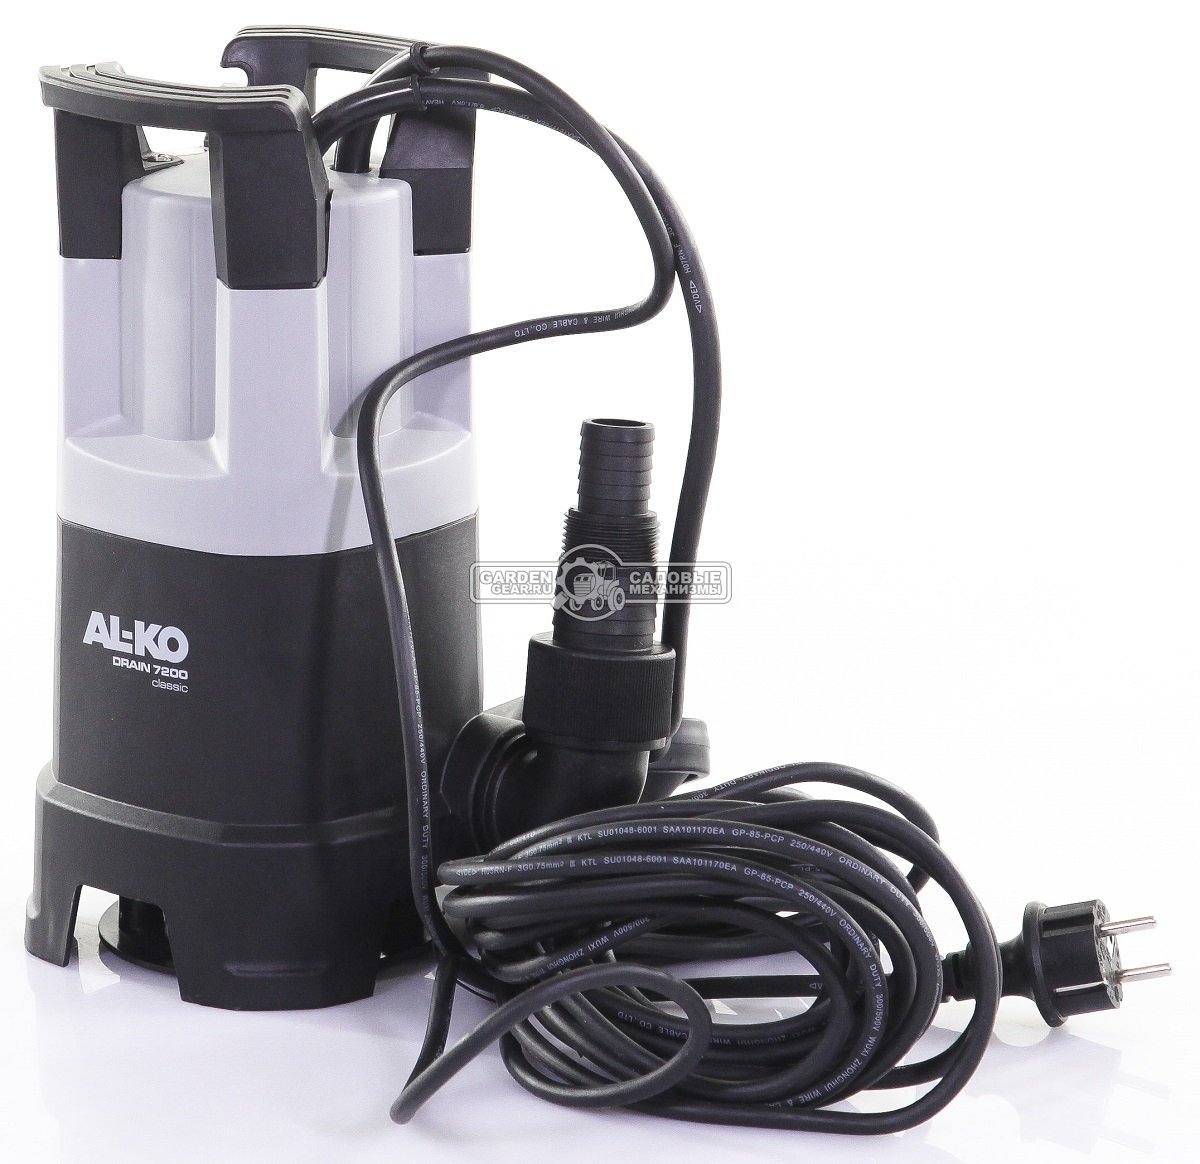 Дренажный насос Al-ko Drain 7200 Classic для грязной воды (PRC, 430 Вт., 6 м, 7200 м3/час, 4,4 кг.)